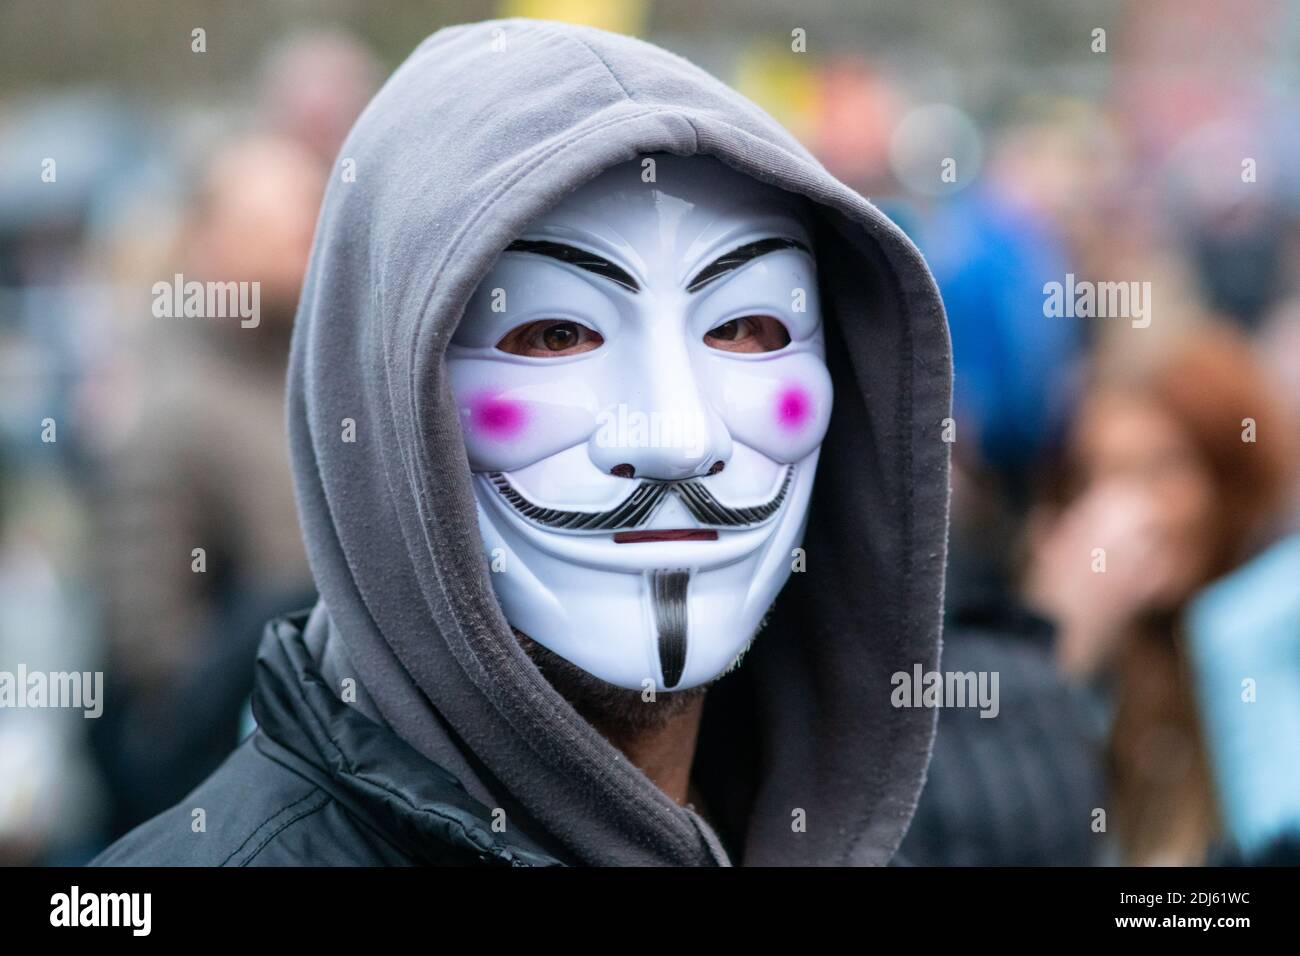 Manchester Sam 12 décembre 2020. Manifestation contre les restrictions de la liberté/lutte contre la COVID-19, Piccadilly Gardens. Homme portant Guy Fawkes ou masque anonyme avec capuche Banque D'Images